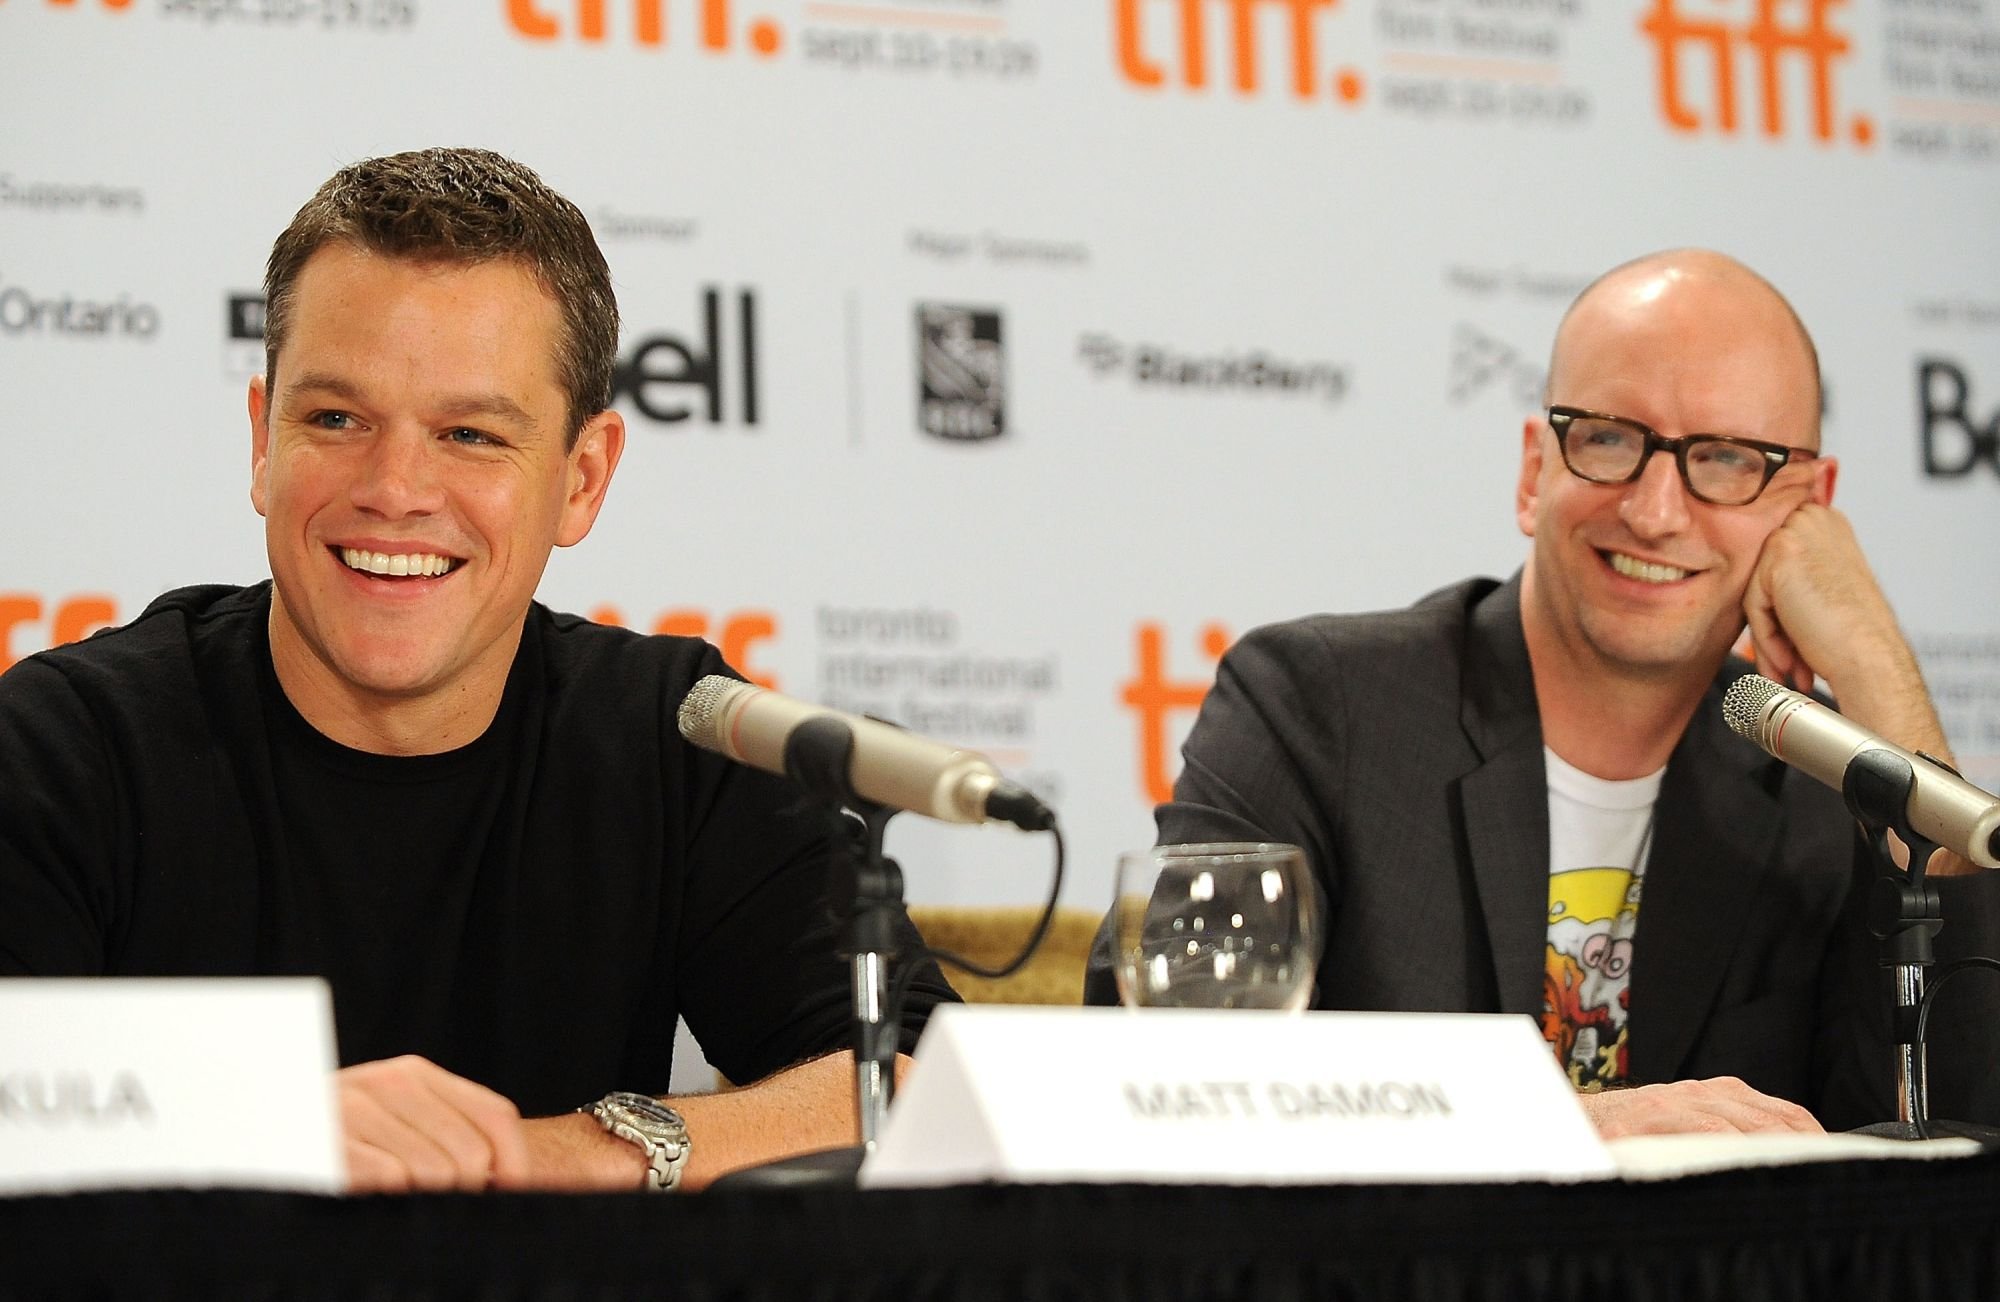 Matt Damon aux côtés de Steven Soderbergh à la conférence de presse du film The Informant en 2009